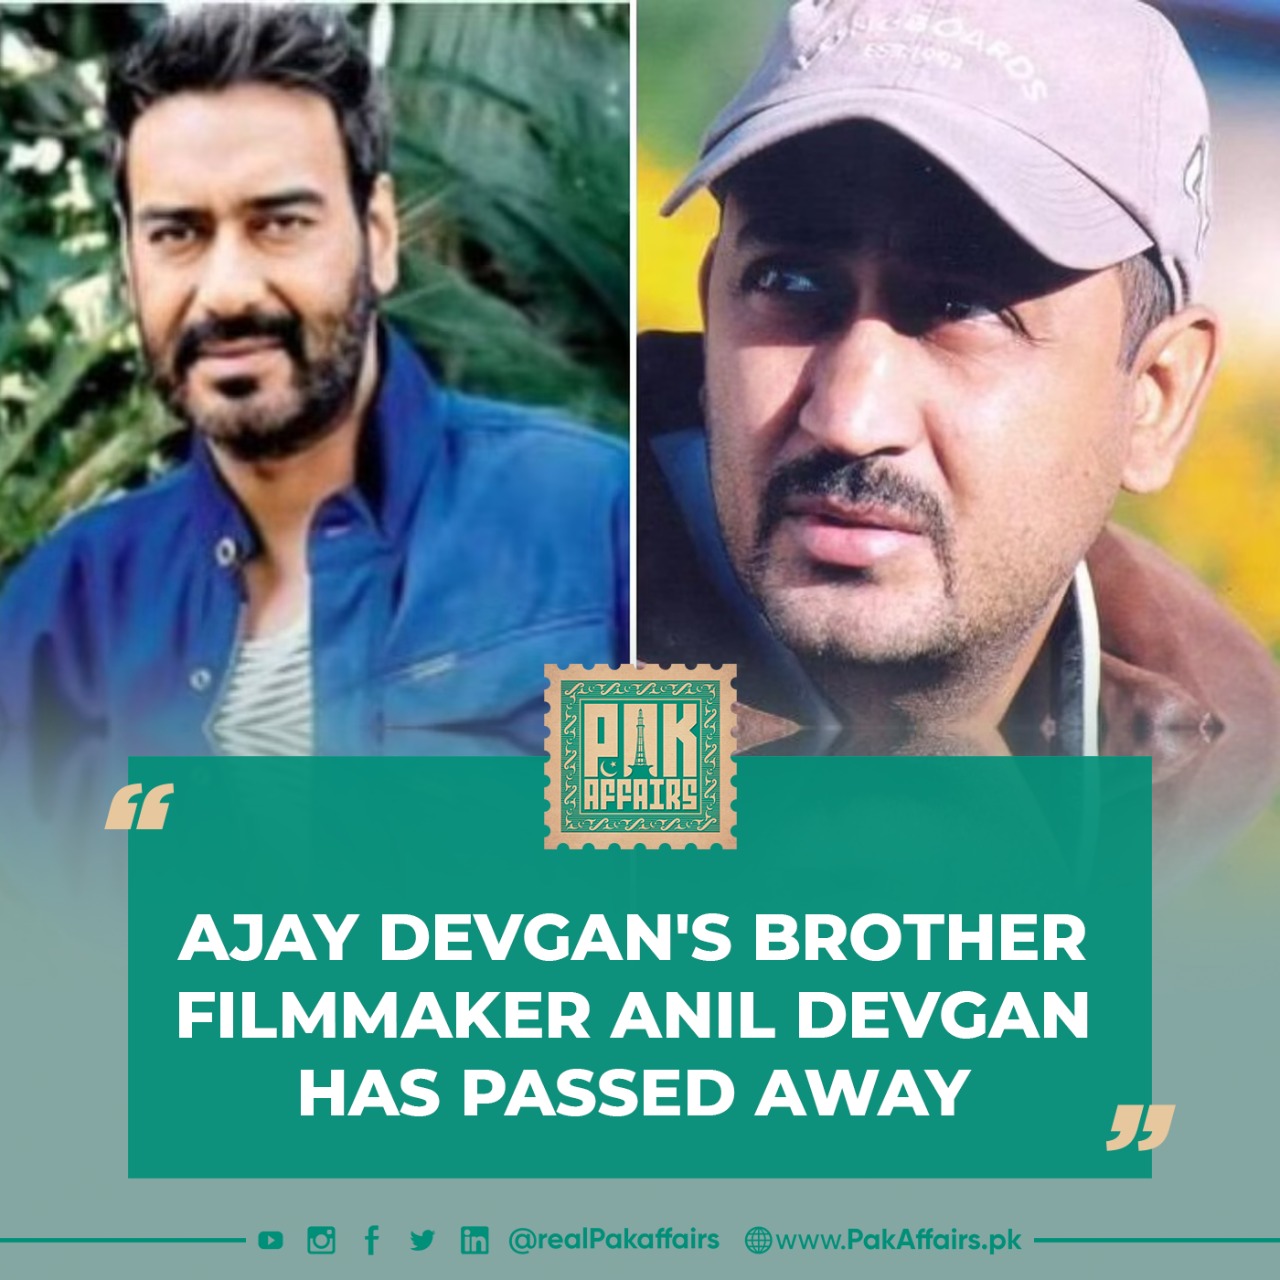 Ajay Devgan's brother filmmaker Anil Devgan has passed away